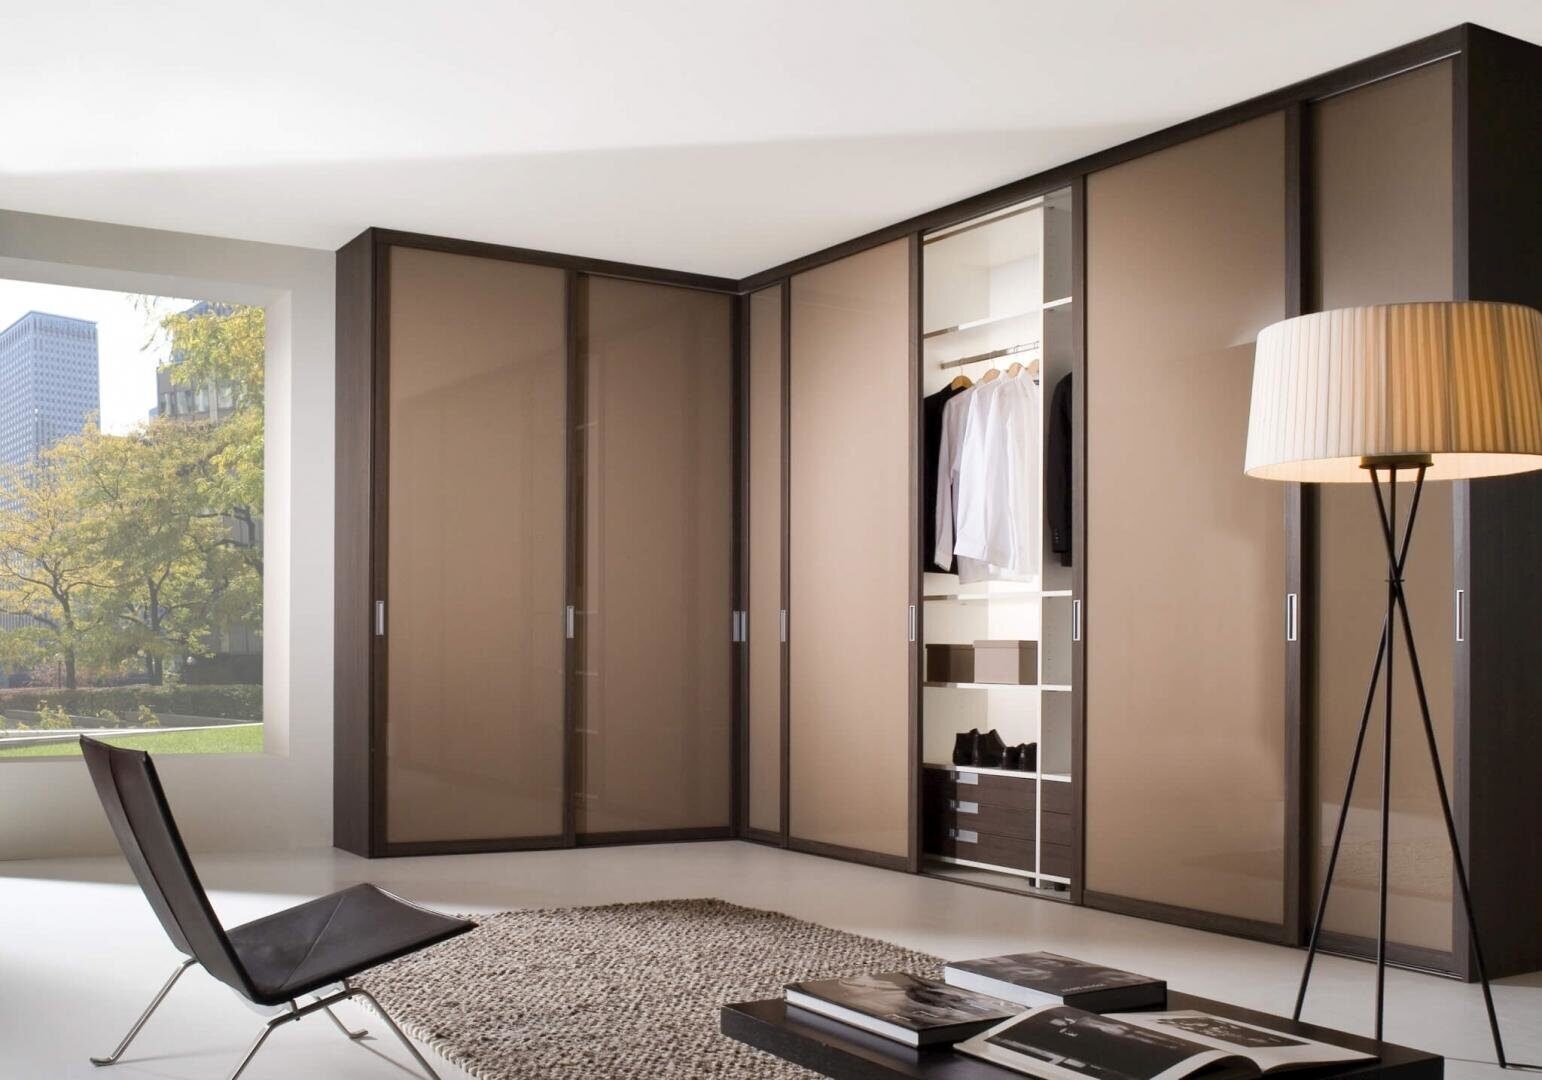 Двери для шкафа: выбор идеального решения для функциональности и стиля вашего интерьера